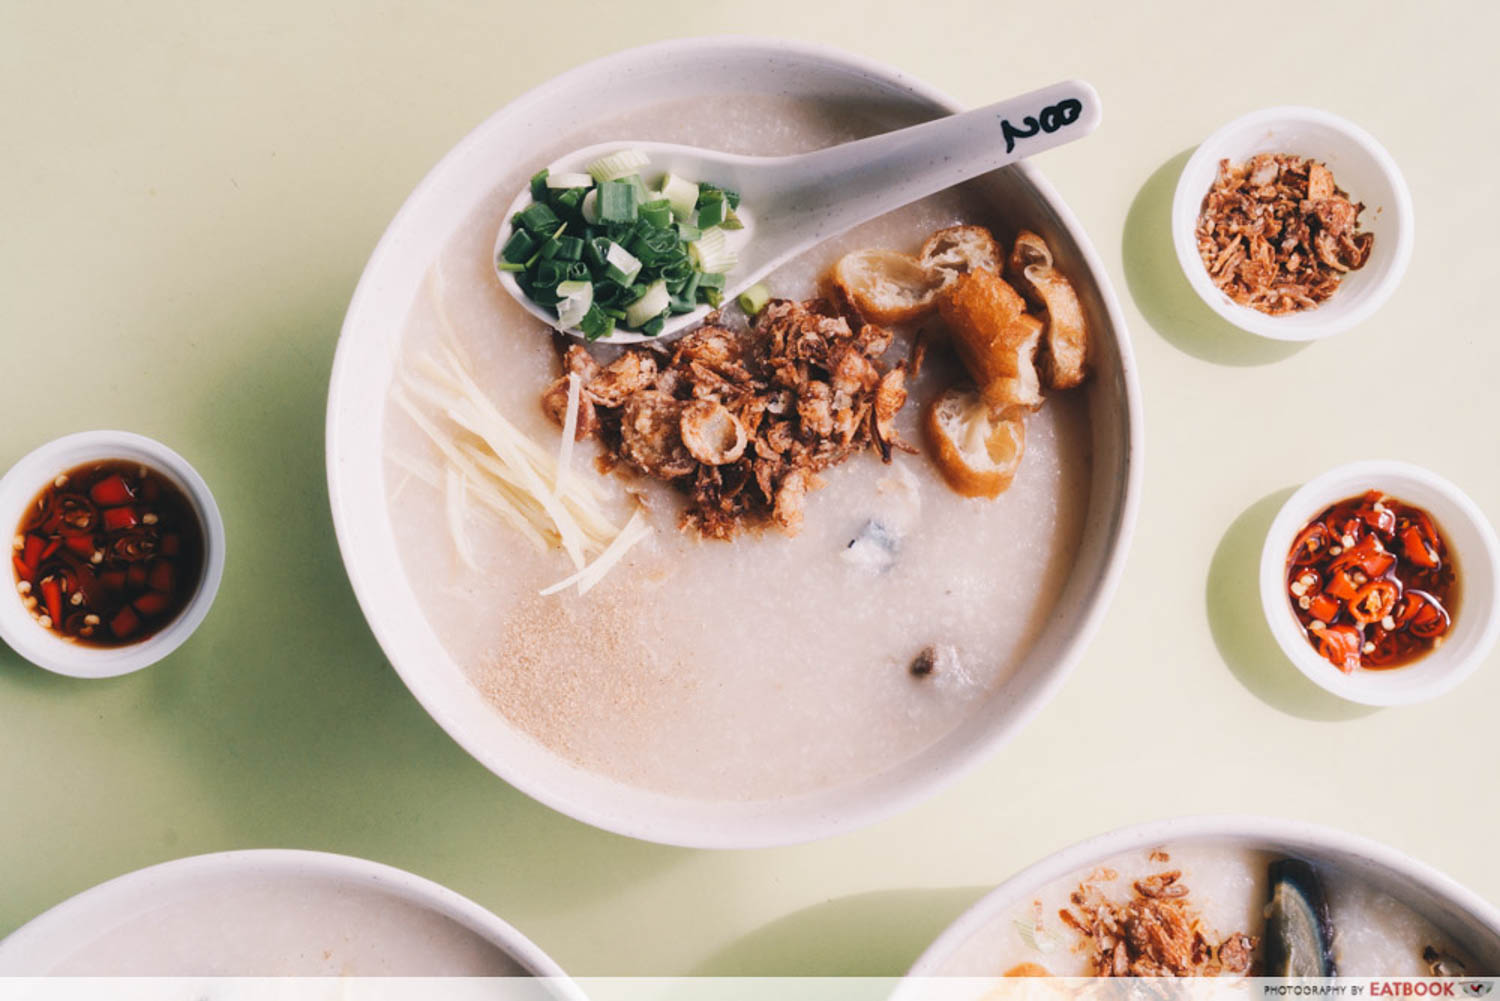 Weng Kiang Kee Porridge - Premium Porridge